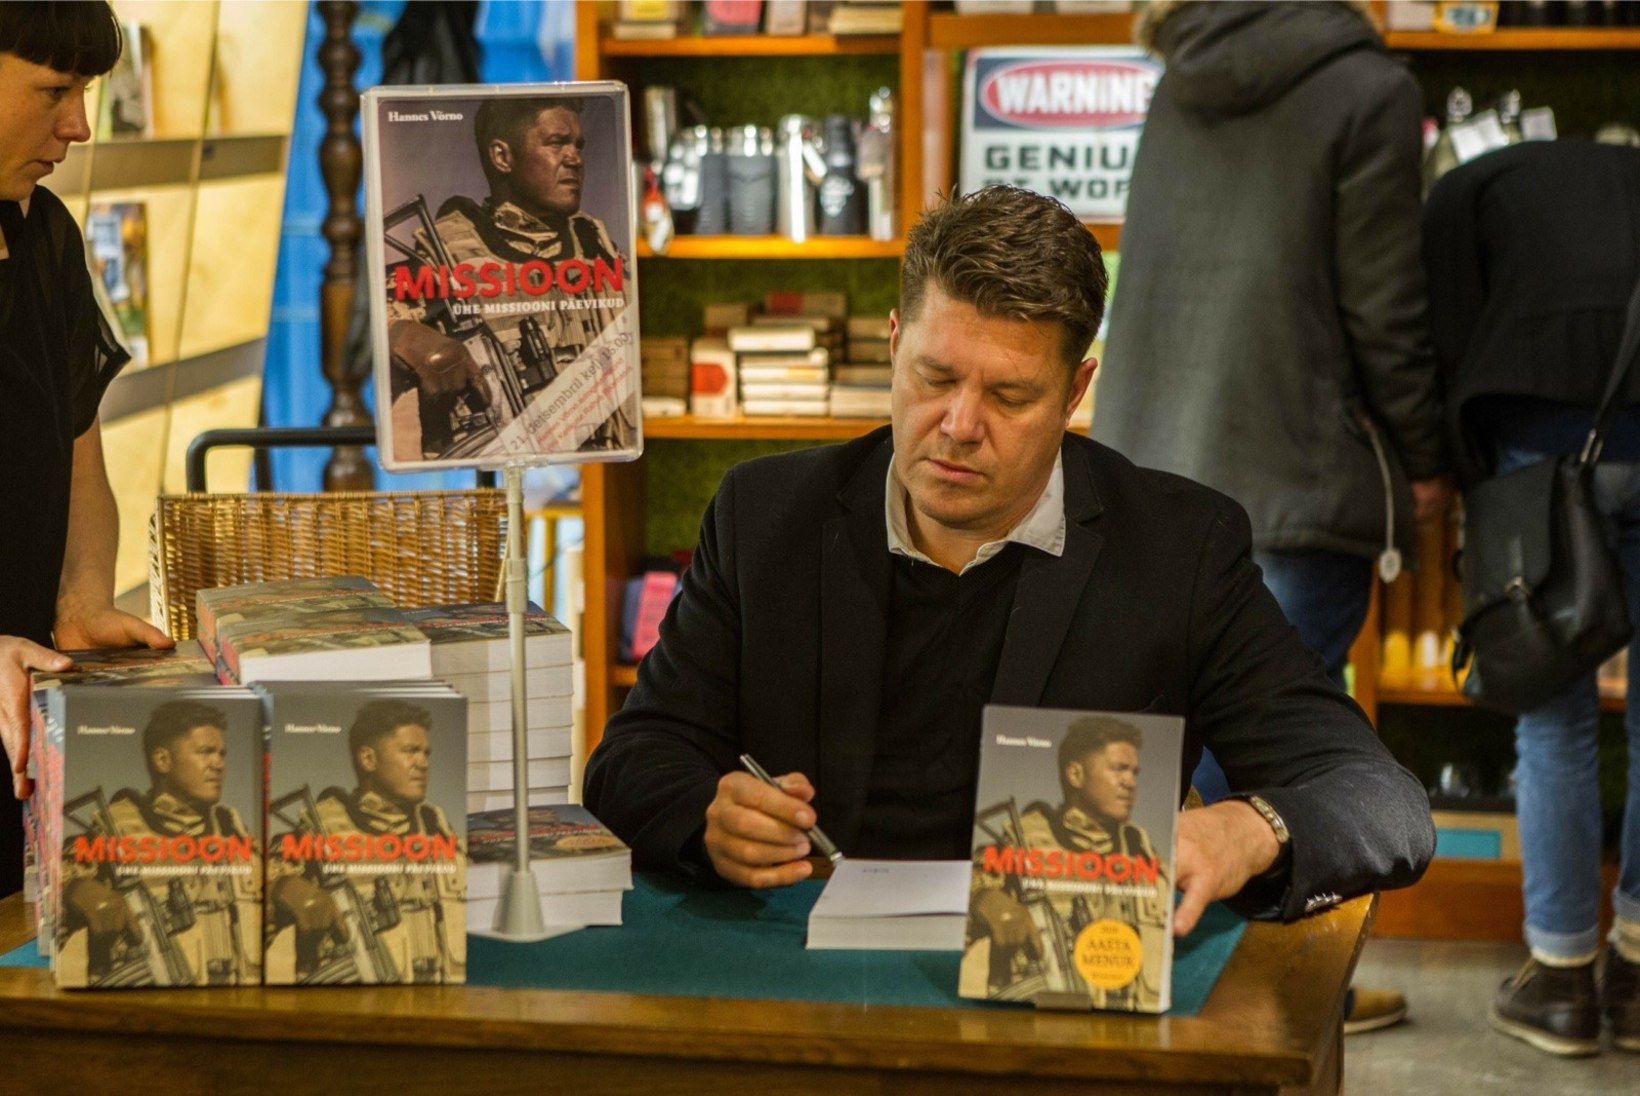 FOTOD | Hannes Võrno jagas oma sõjamissioonide raamatule autogramme